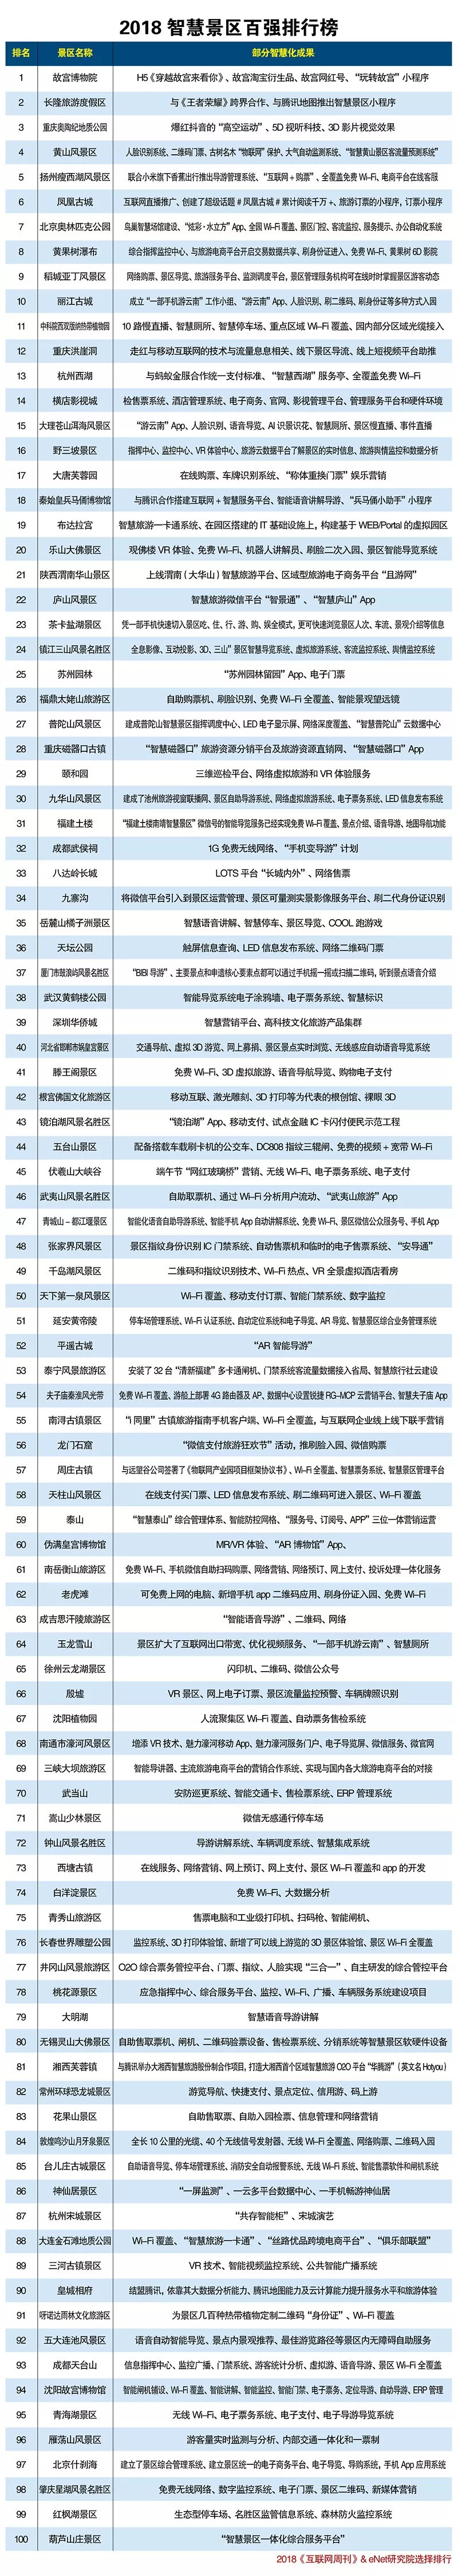 2018年中国智慧景区百强排行榜